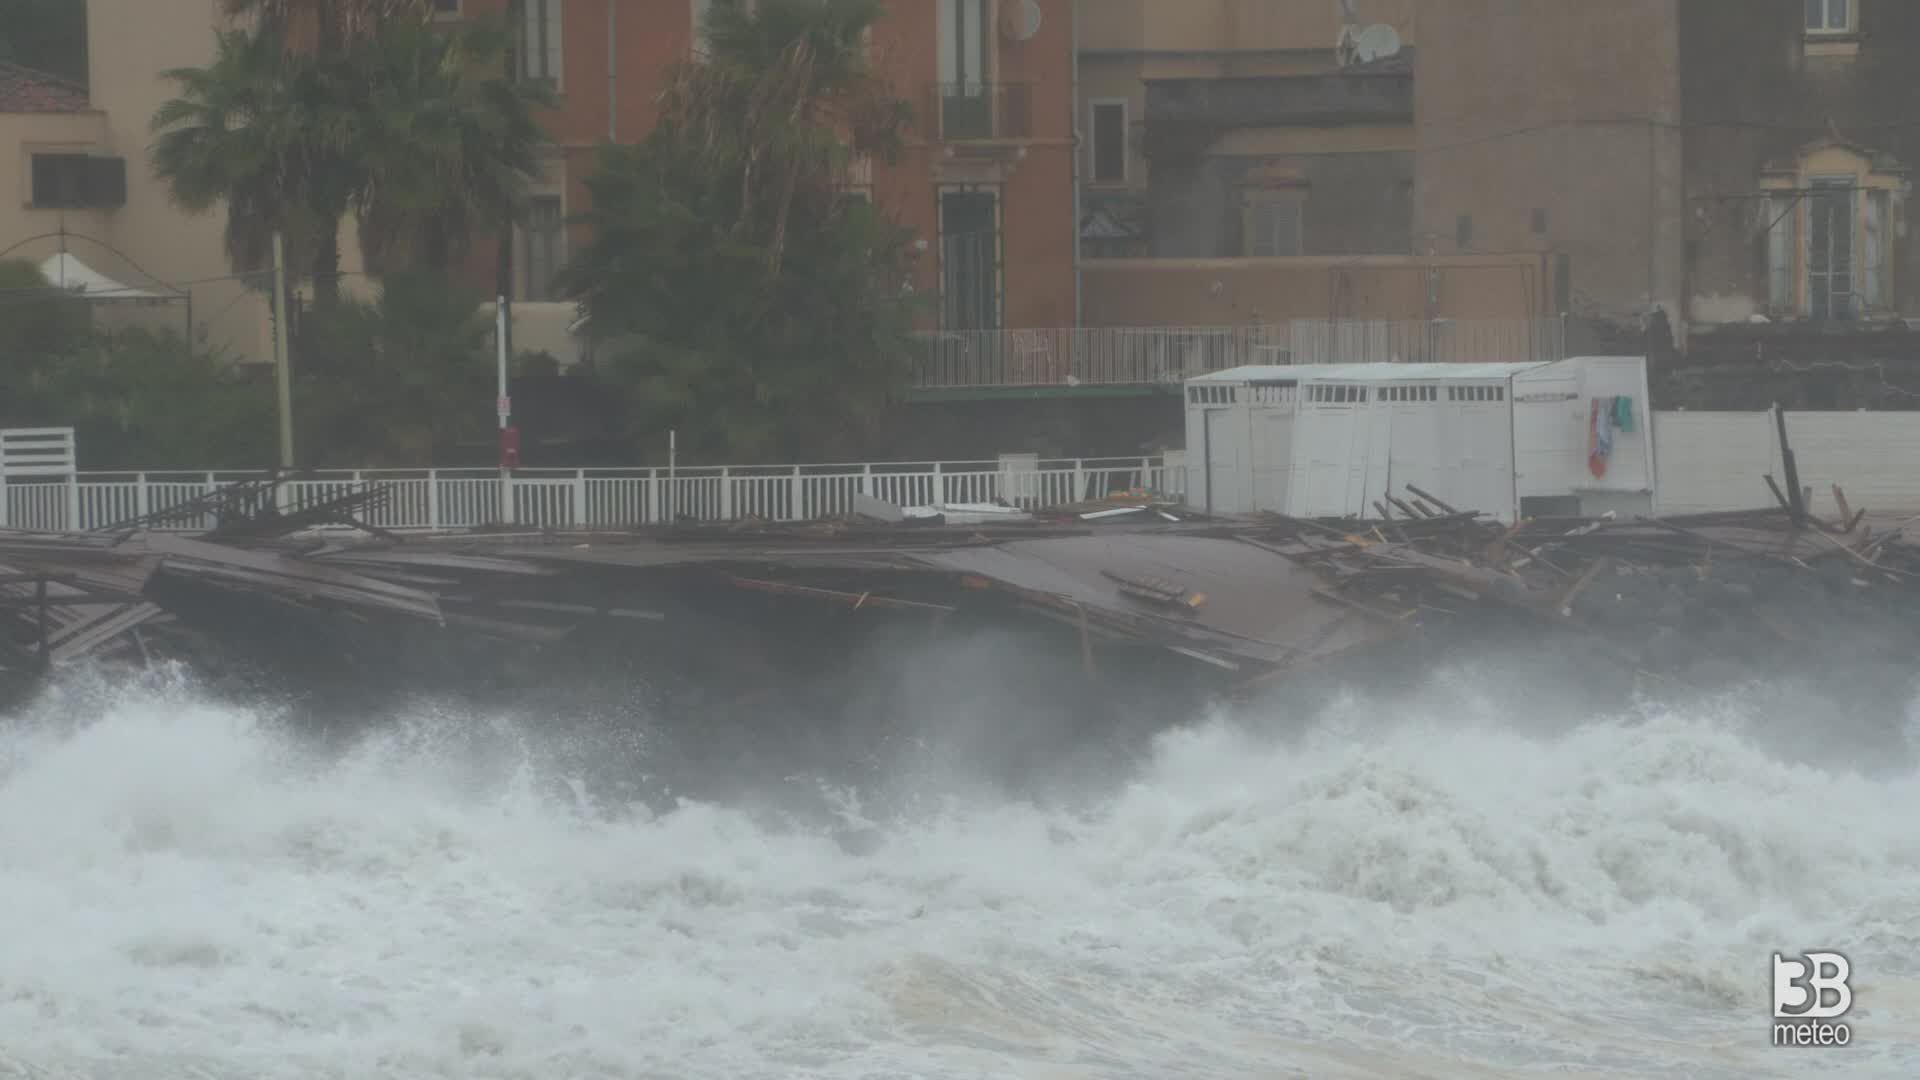 Cronaca Meteo Catania: il video della potente mareggiata sul lungomare San Giovanni Li Cuti